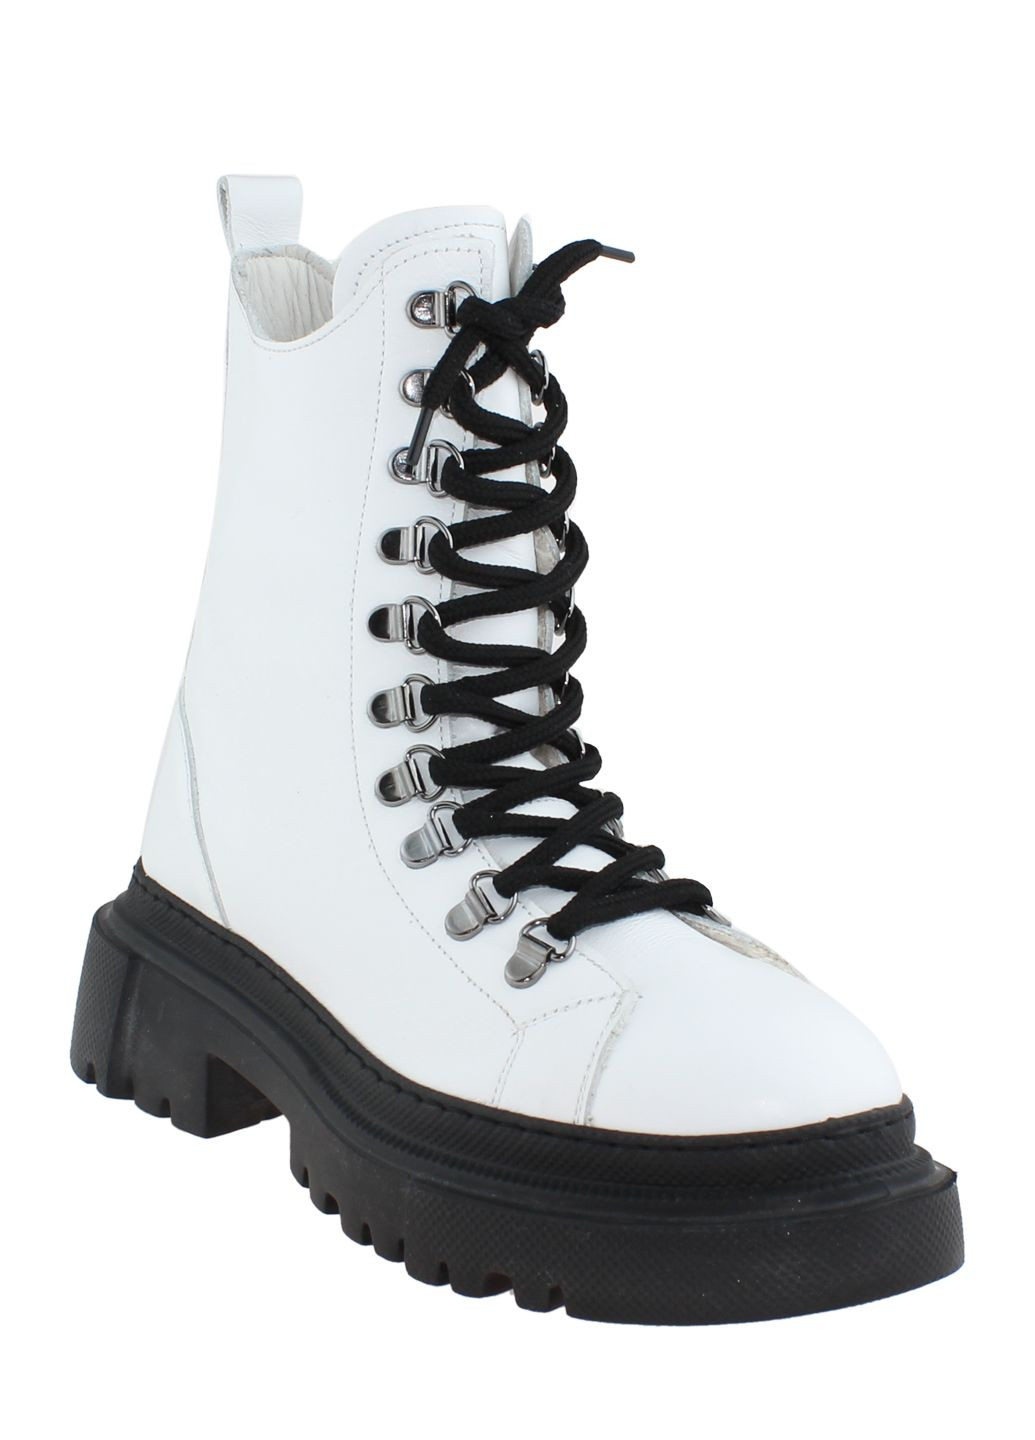 Зимние ботинки g21057.06 белый Dexcor